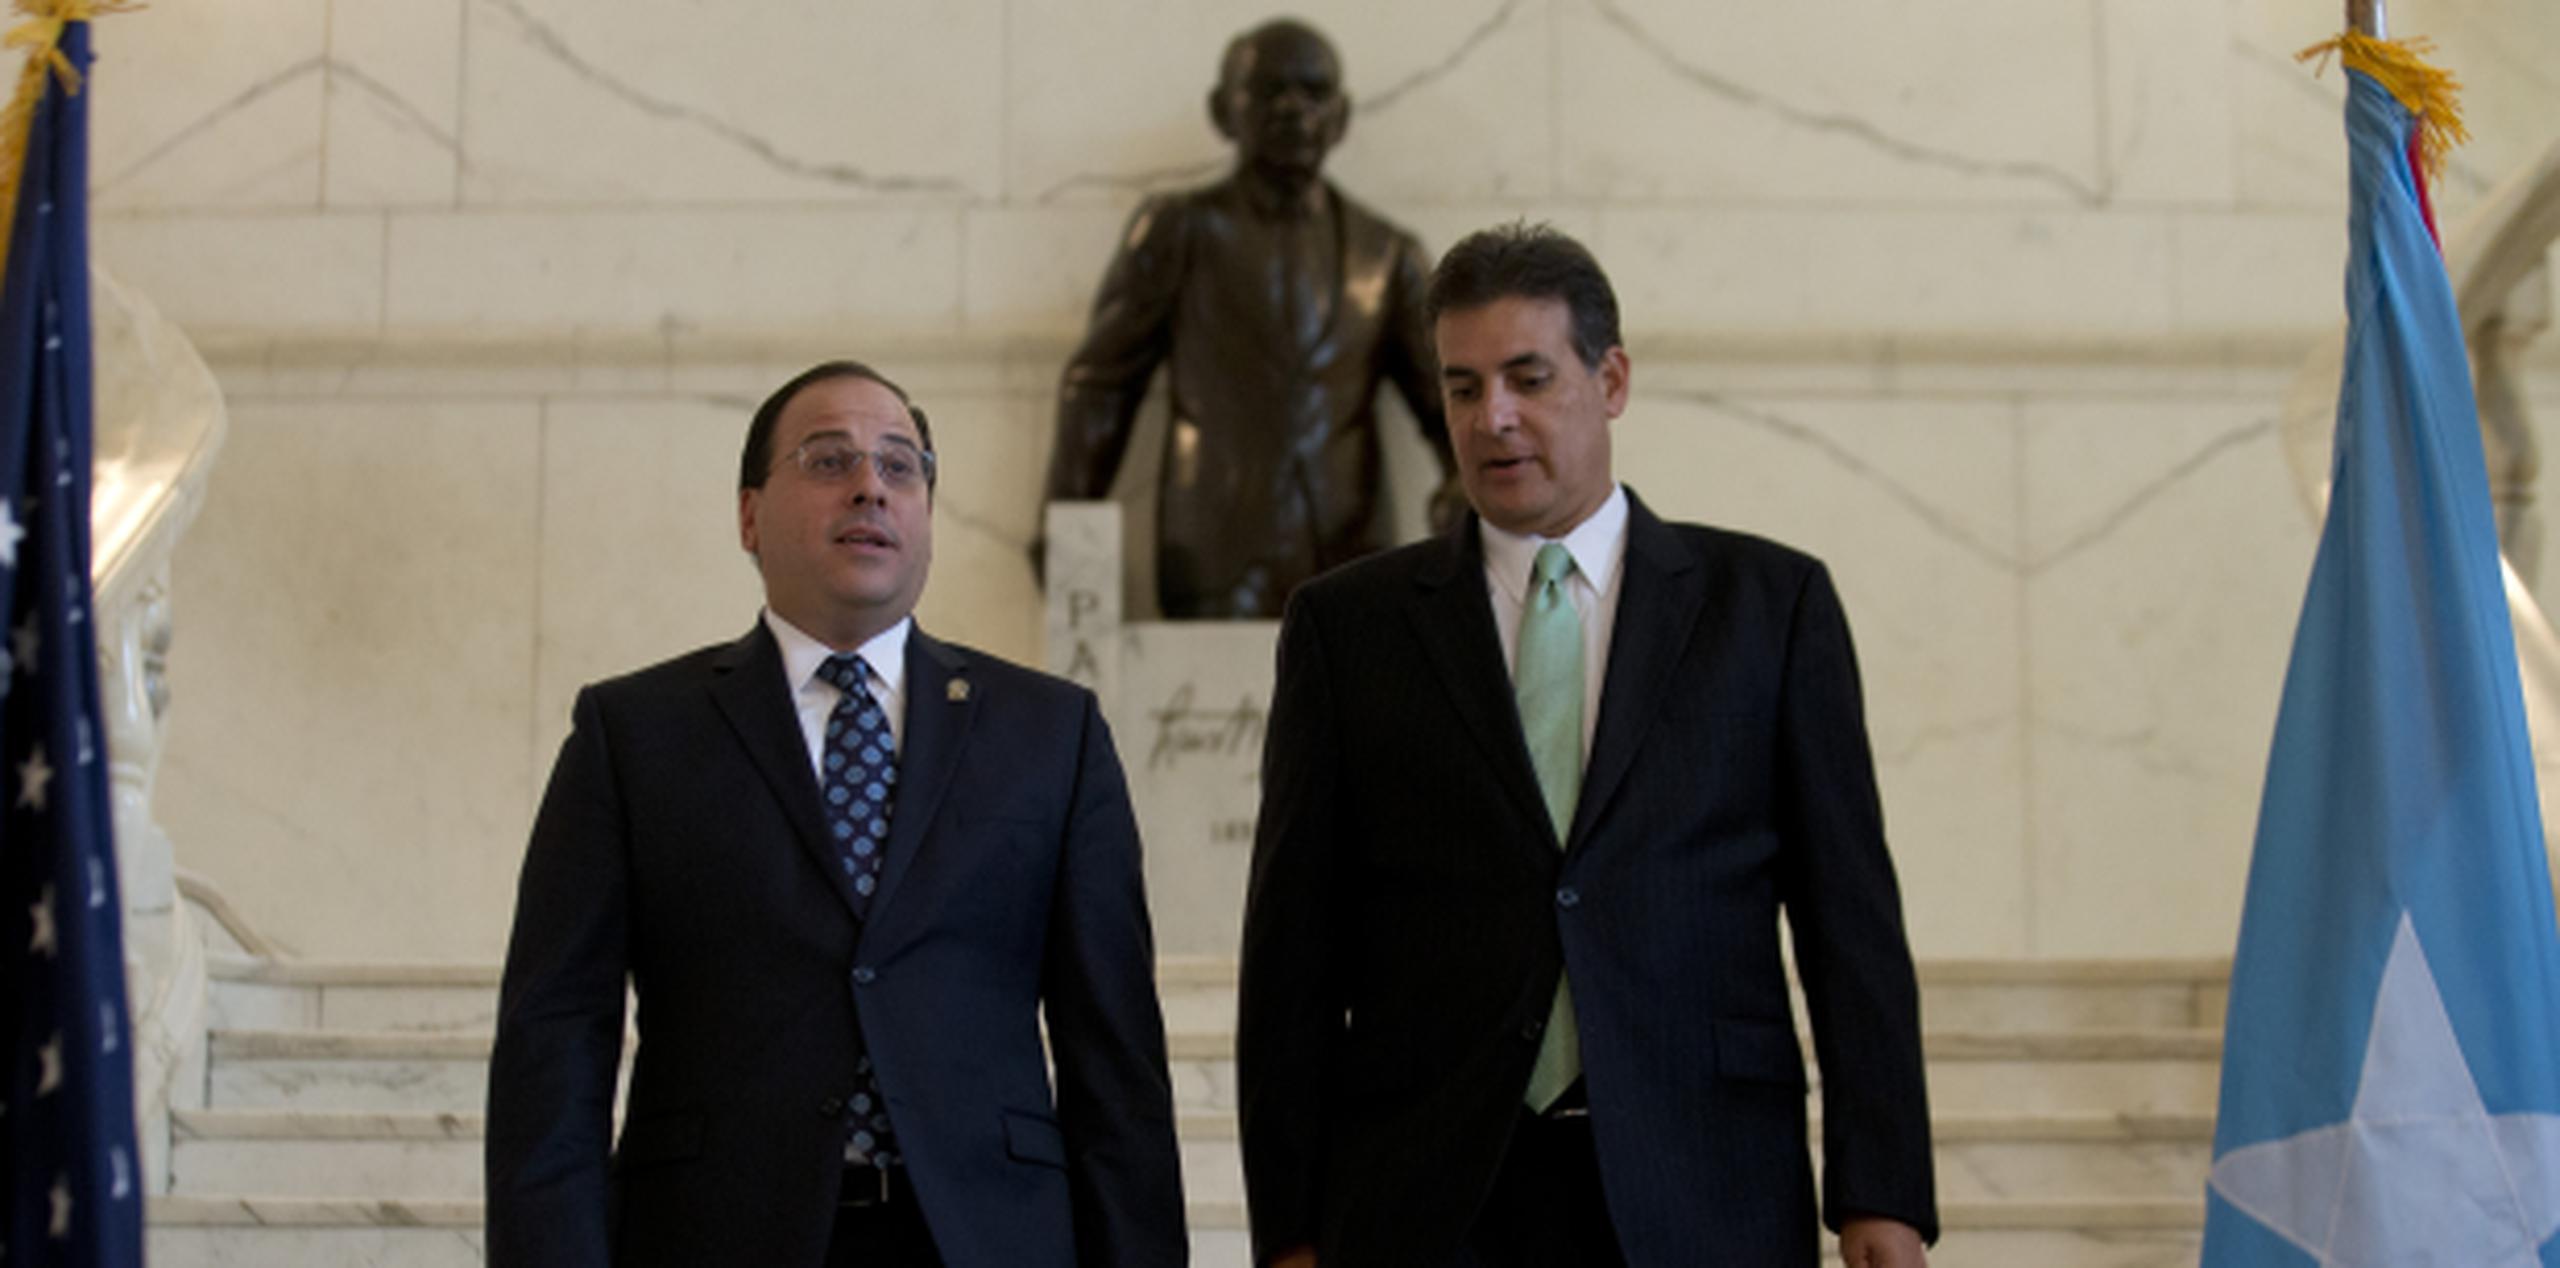 Bhatia y Perelló caminan frente a una estatua de Luis Muñoz Marín previo a revelar el acuerdo legislativo sobre el presupuesto. (teresa.canino@gfrmedia.com)